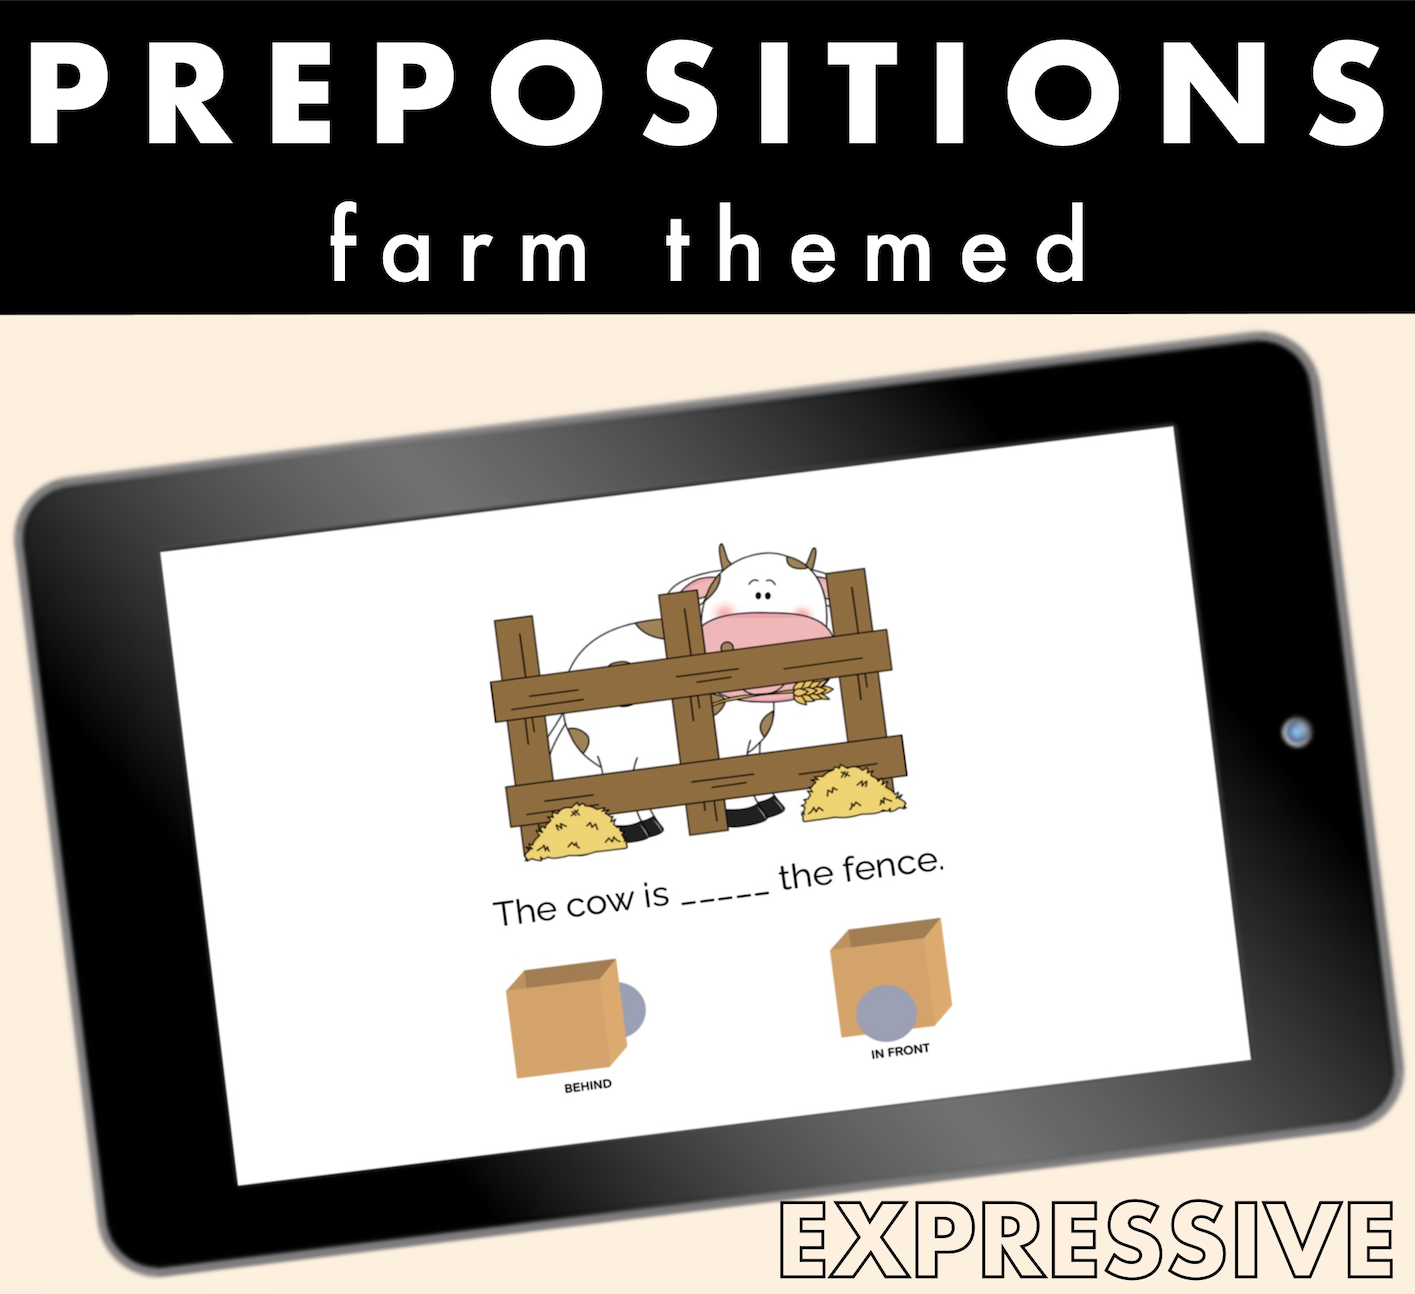 Expressive Farm Prepositions image